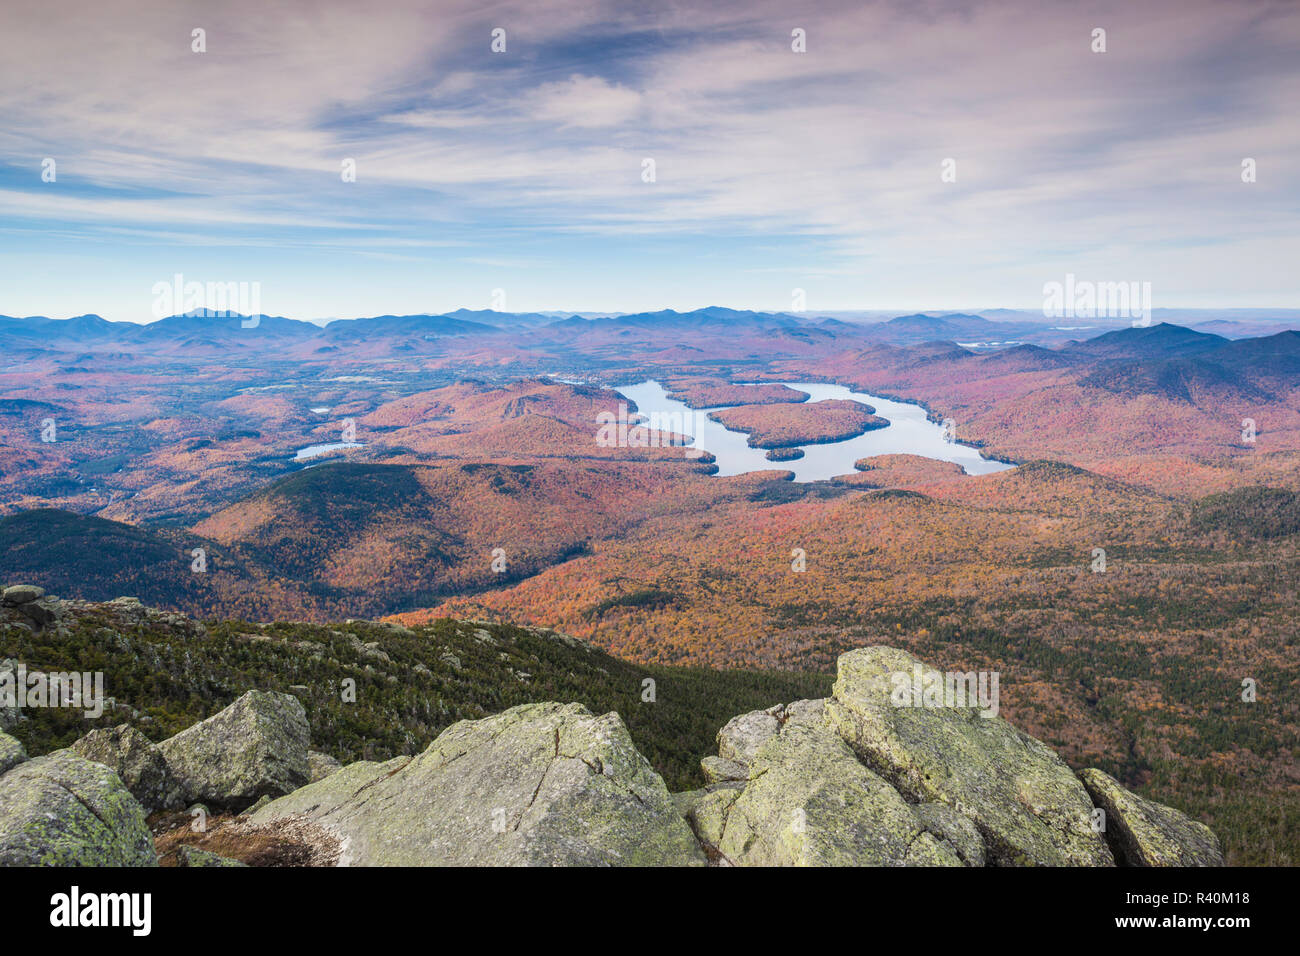 USA, New York, Adirondack Mountains, Wilmington, Whiteface Mountain, view towards Lake Placid, autumn Stock Photo